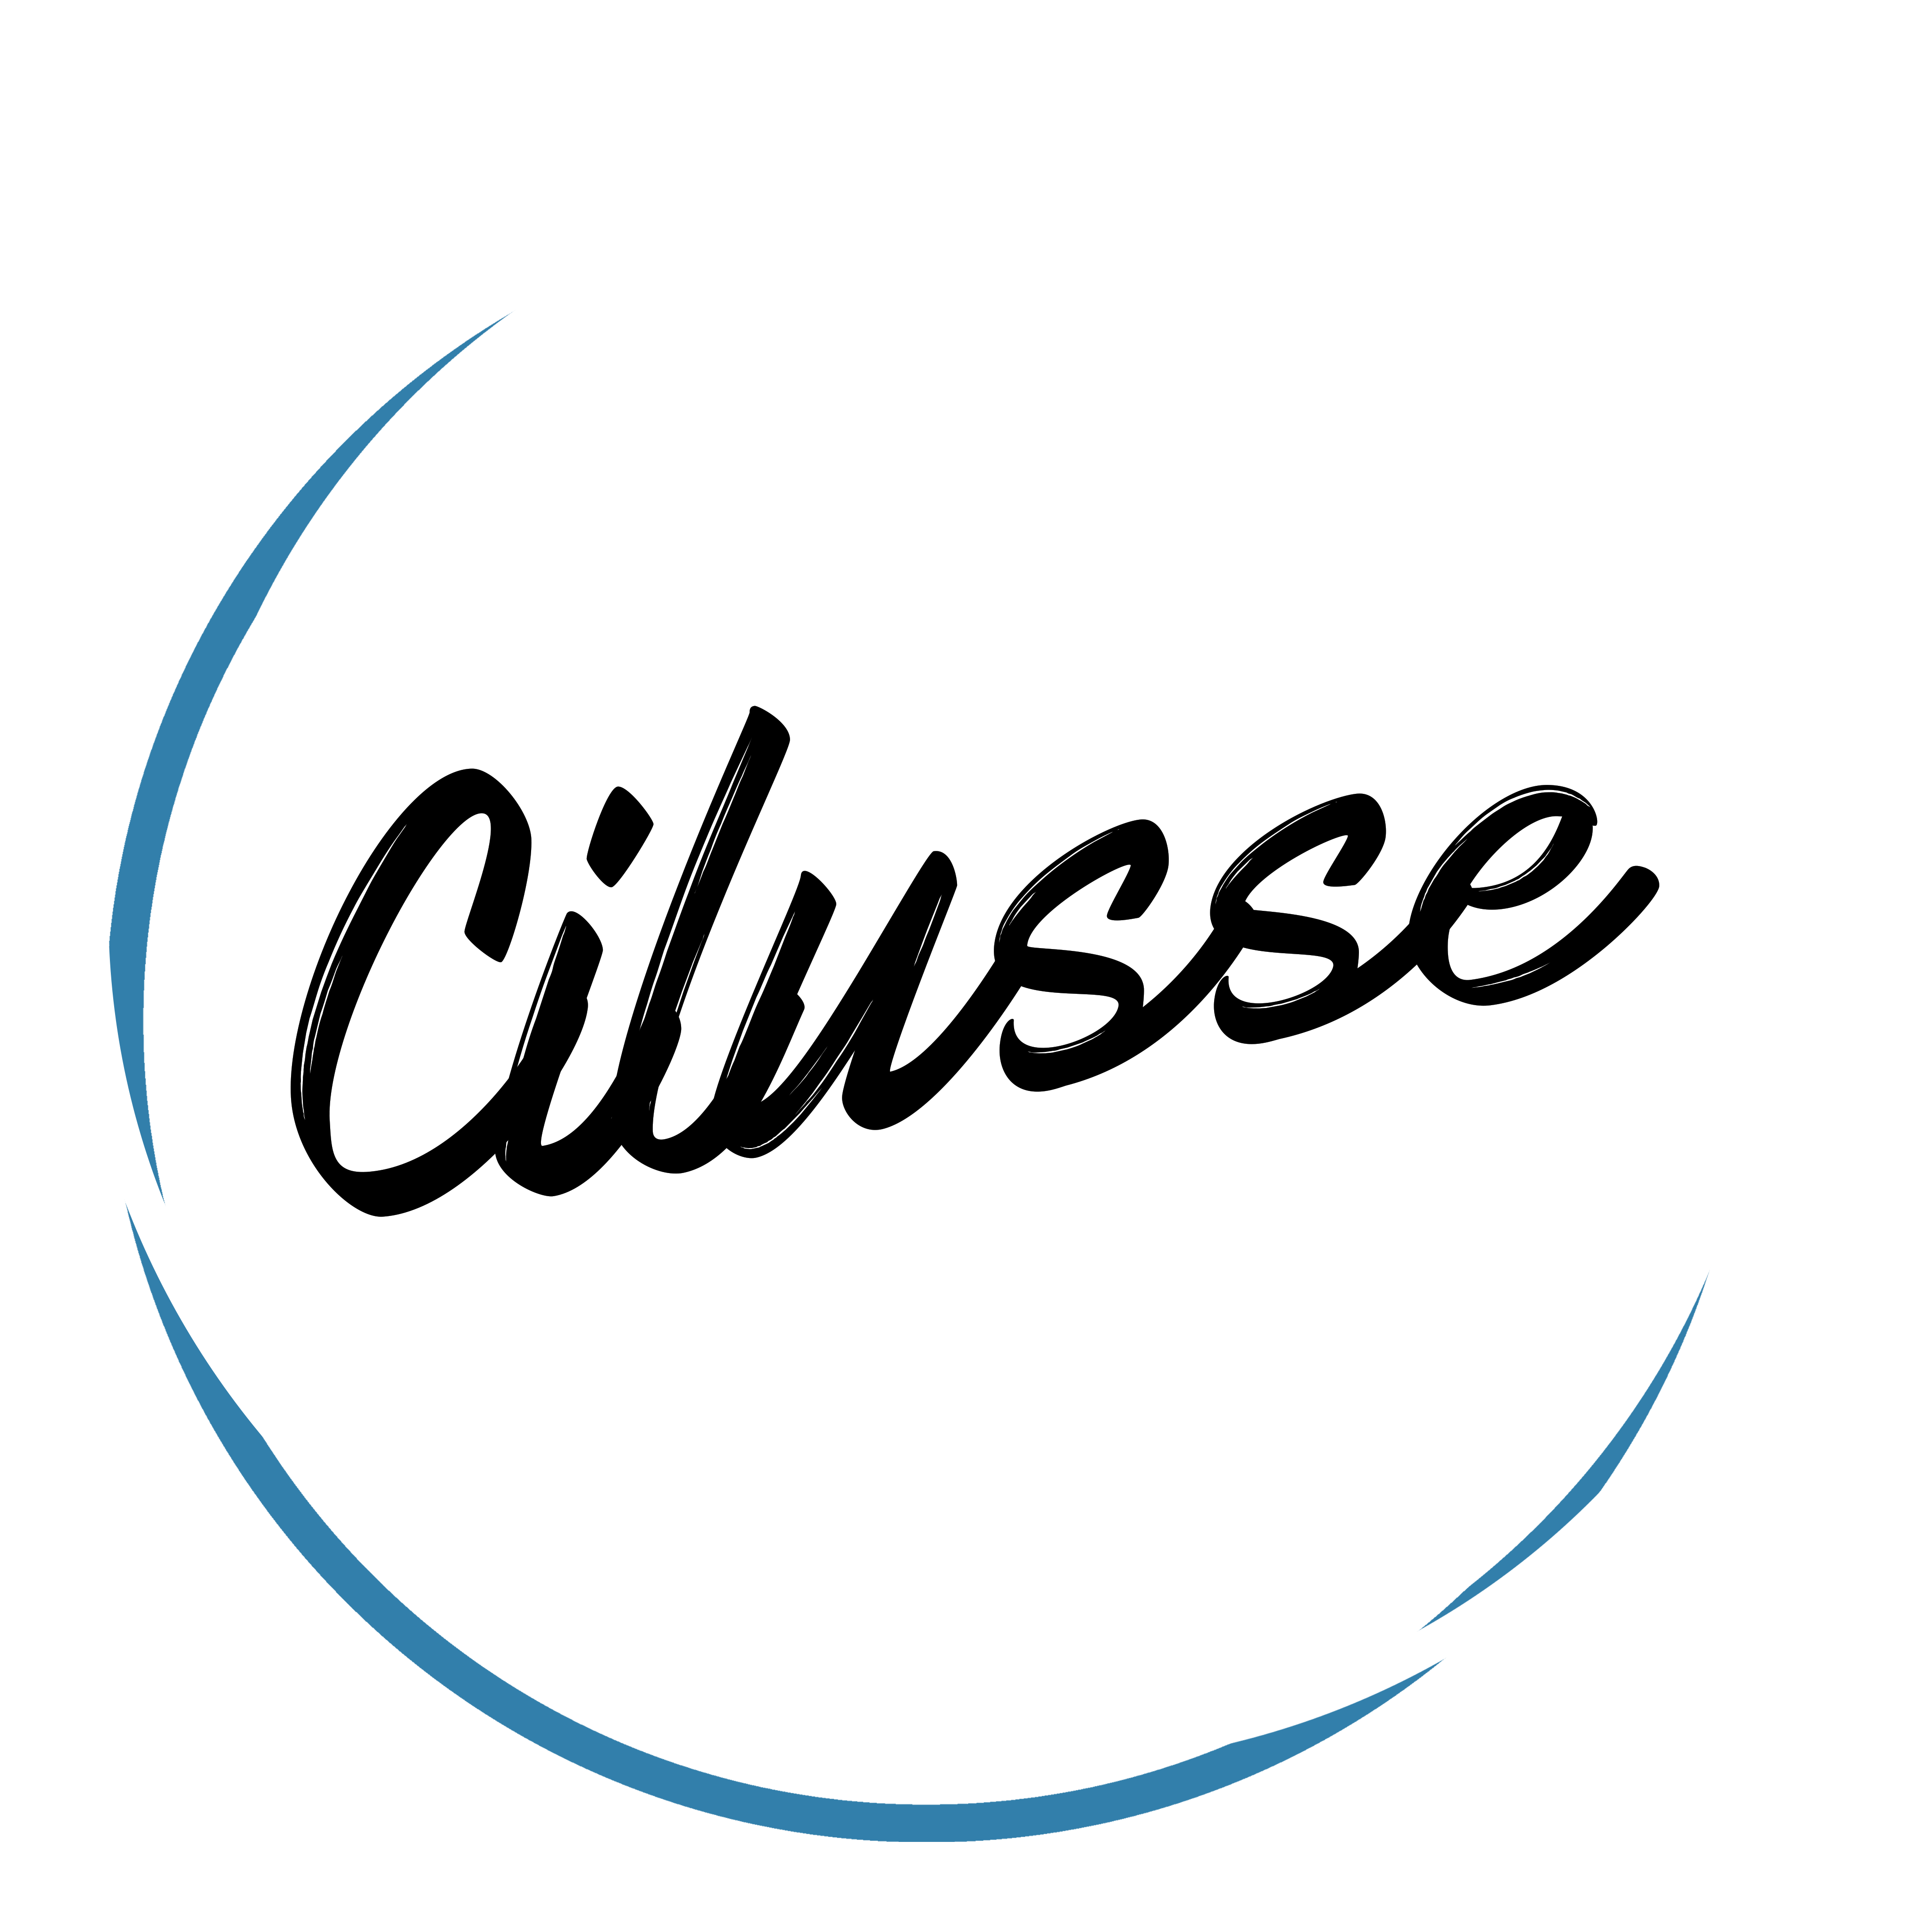 Cilusse Logo